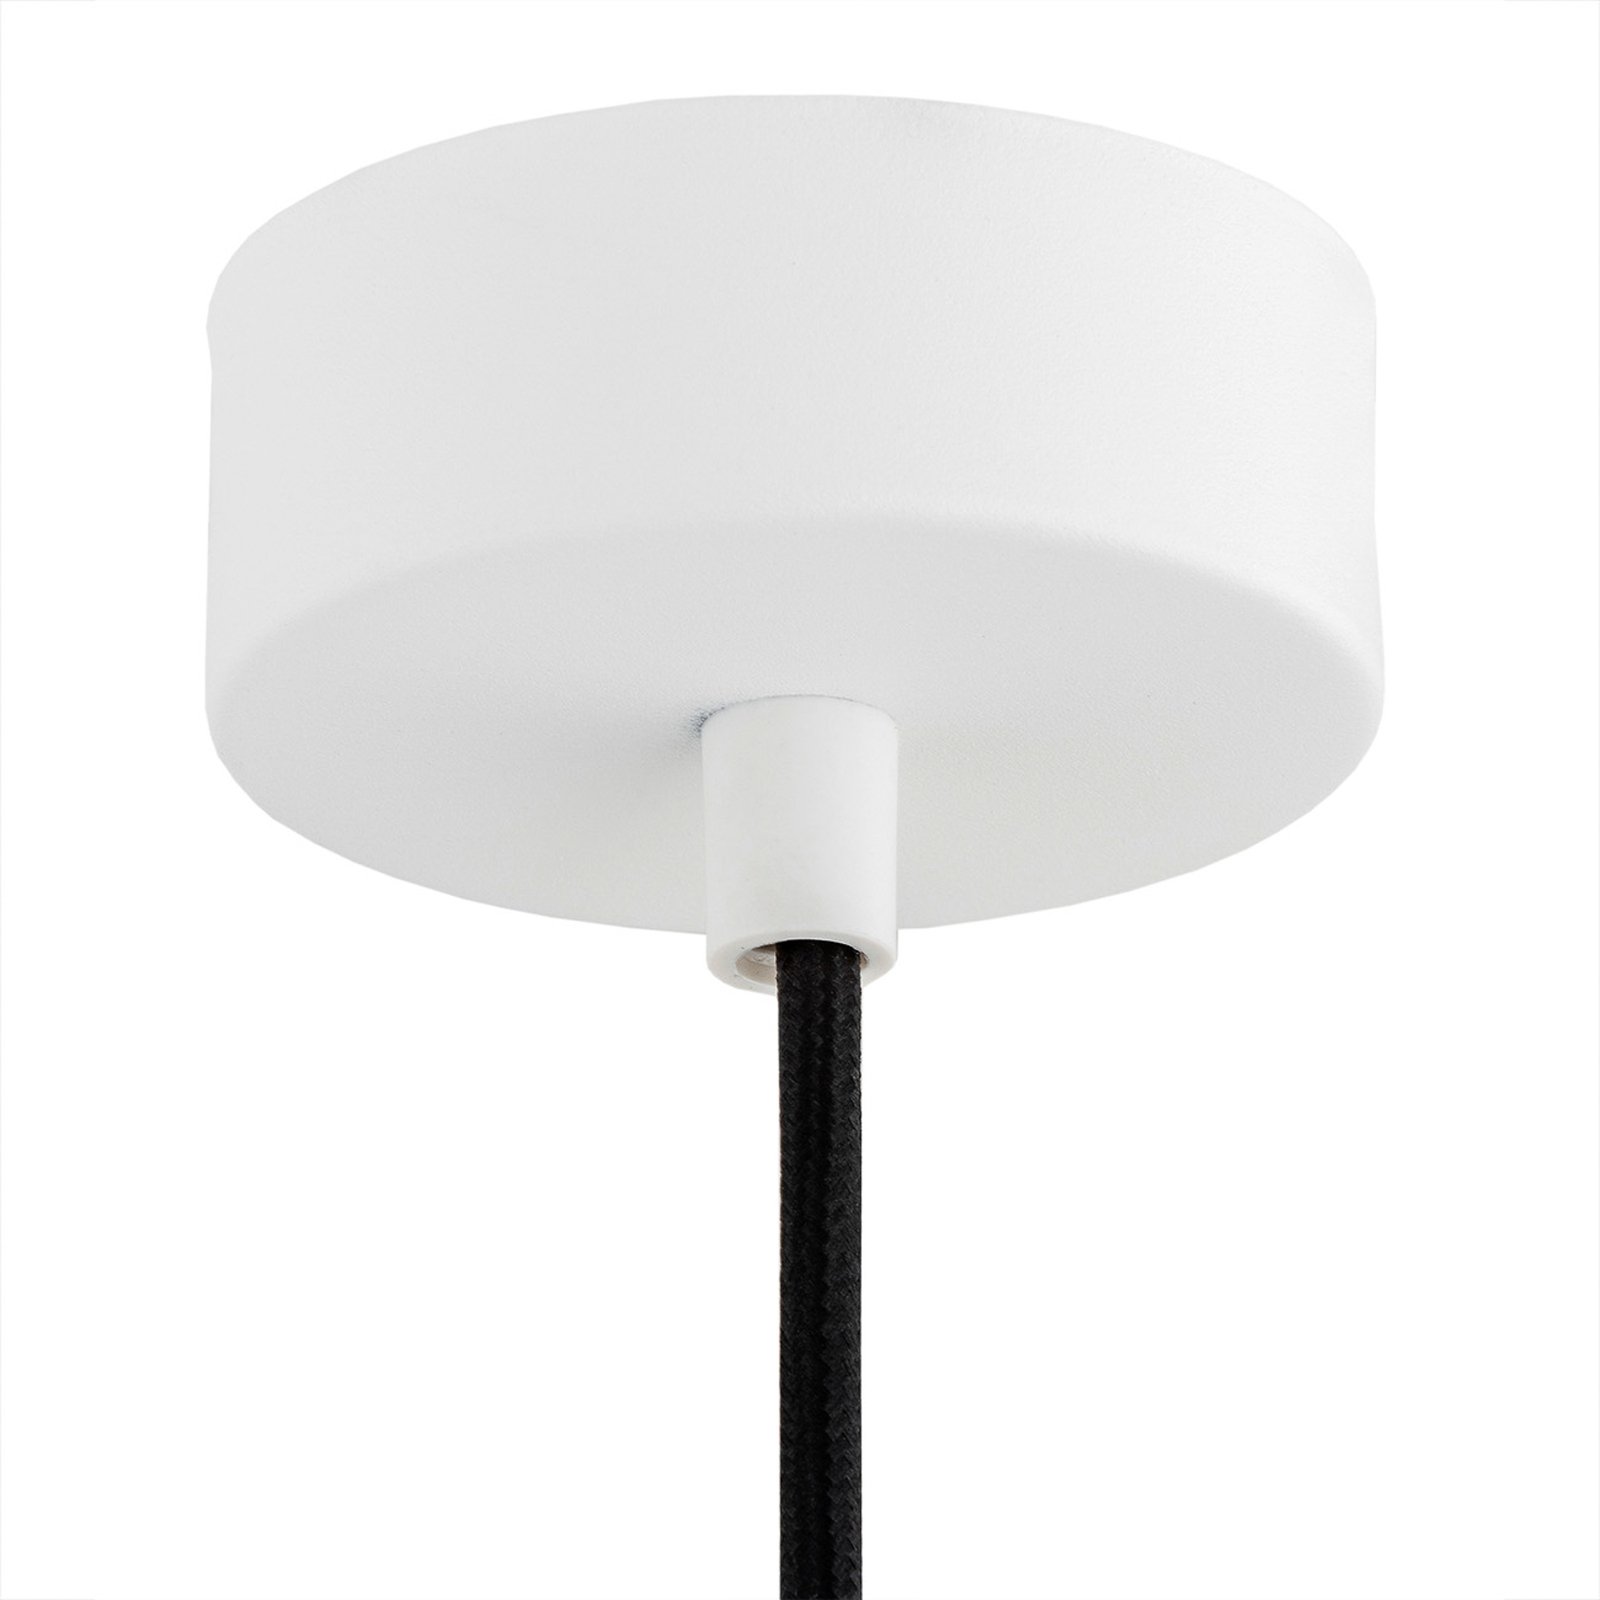 Orte pendant light, Ø 28cm, 1-bulb, white